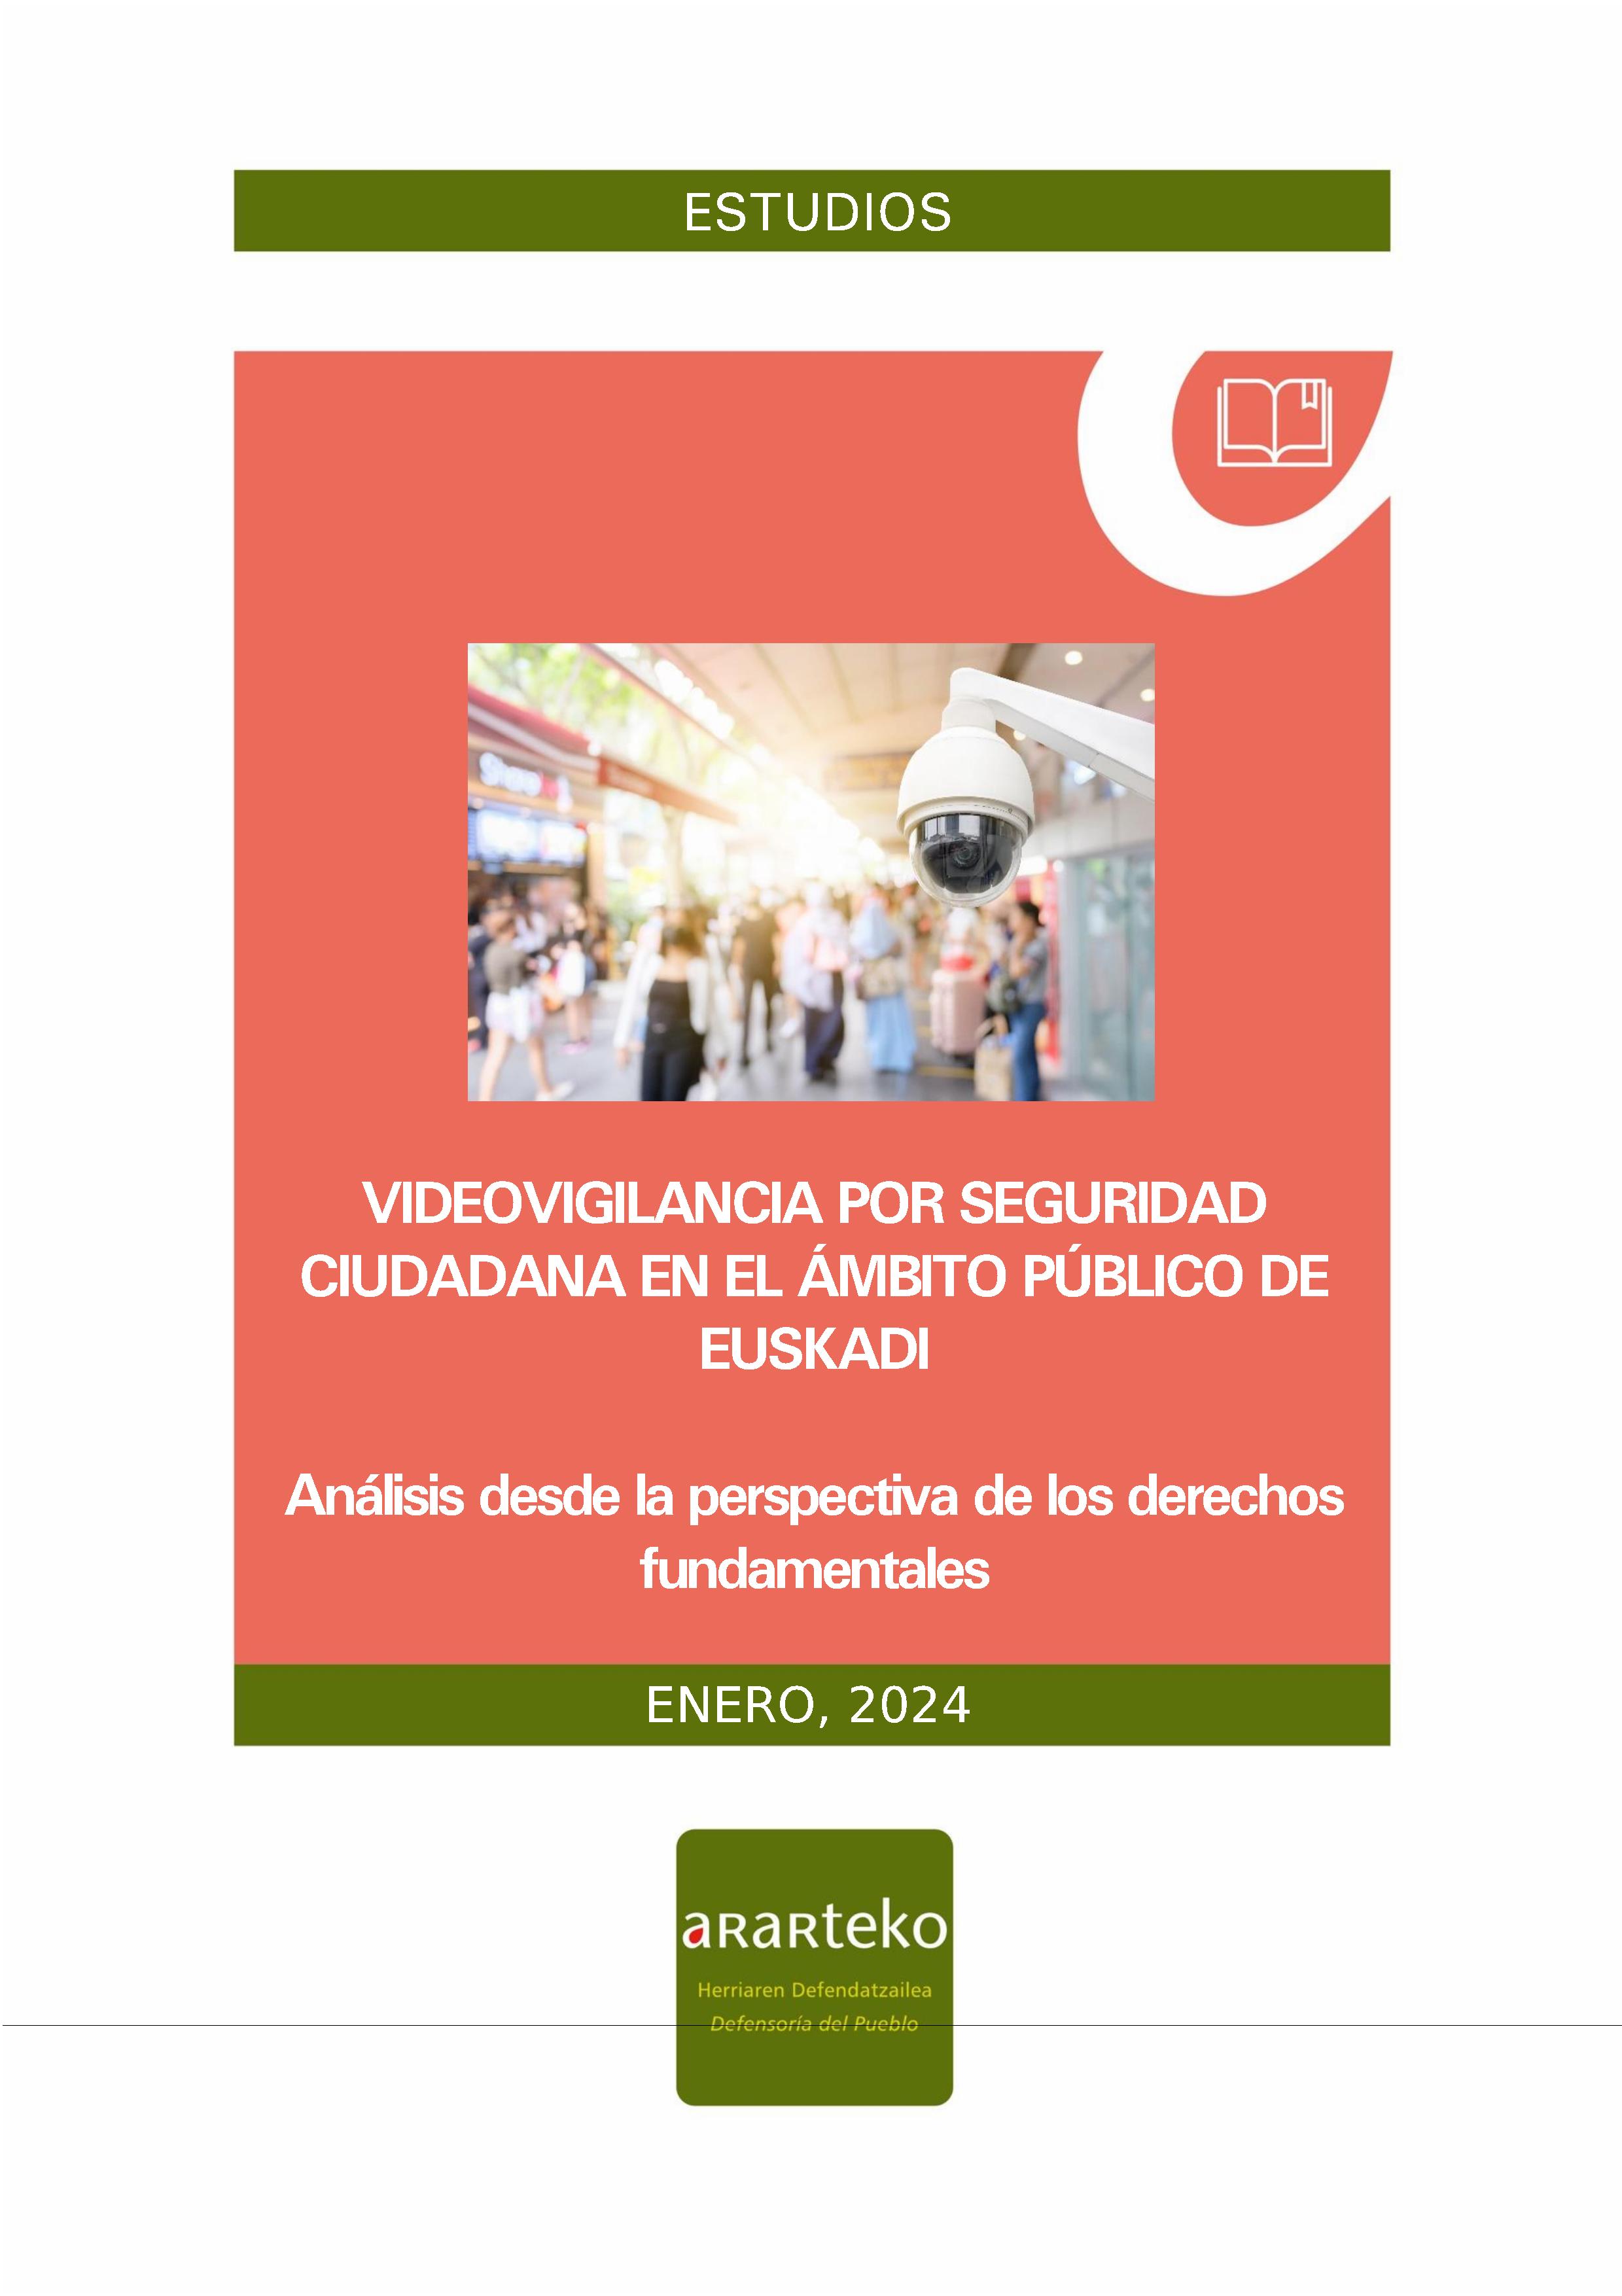 Videovigilancia por seguridad ciudadana en el ámbito público de Euskadi: análisis desde la perspectiva de los derechos fundamentales